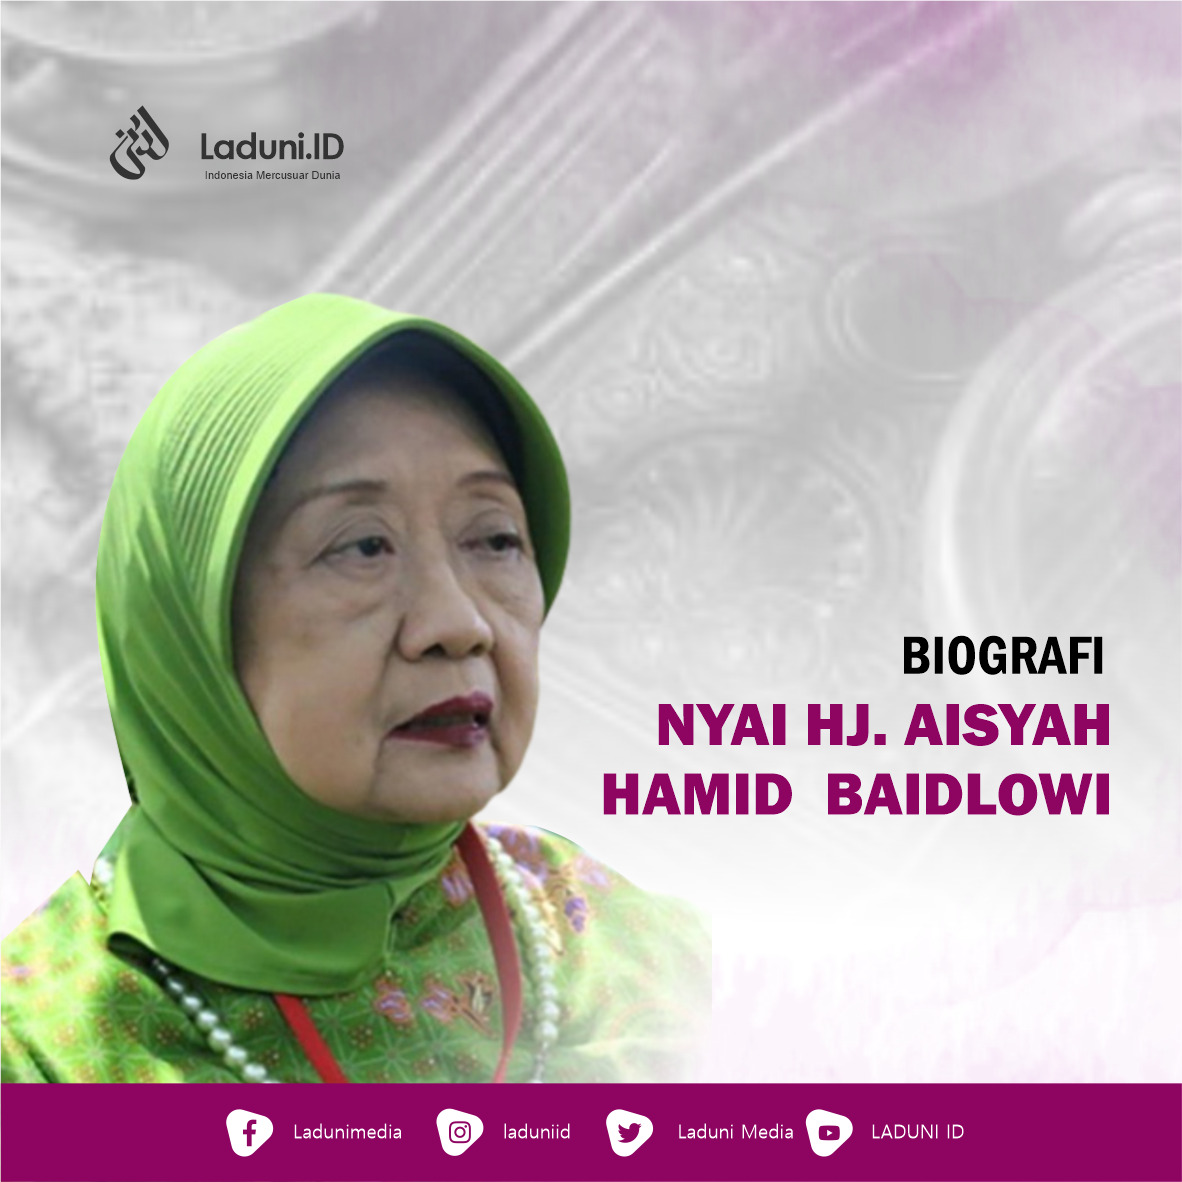 Biografi Nyai Hj. Aisyah Hamid Baidlowi